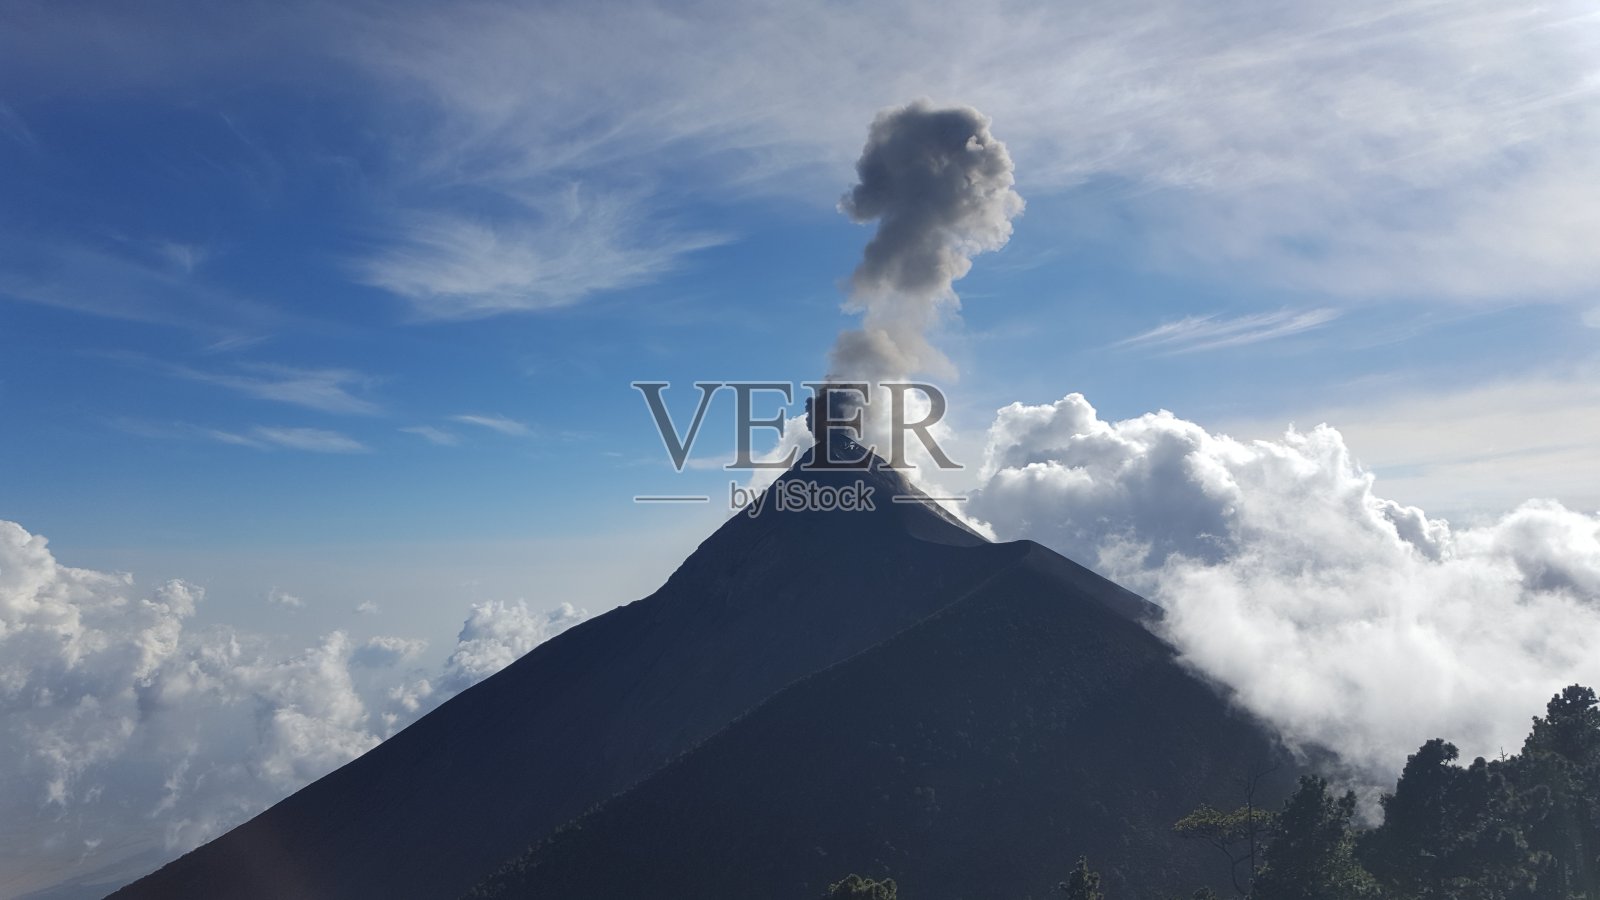 火山喷发照片摄影图片